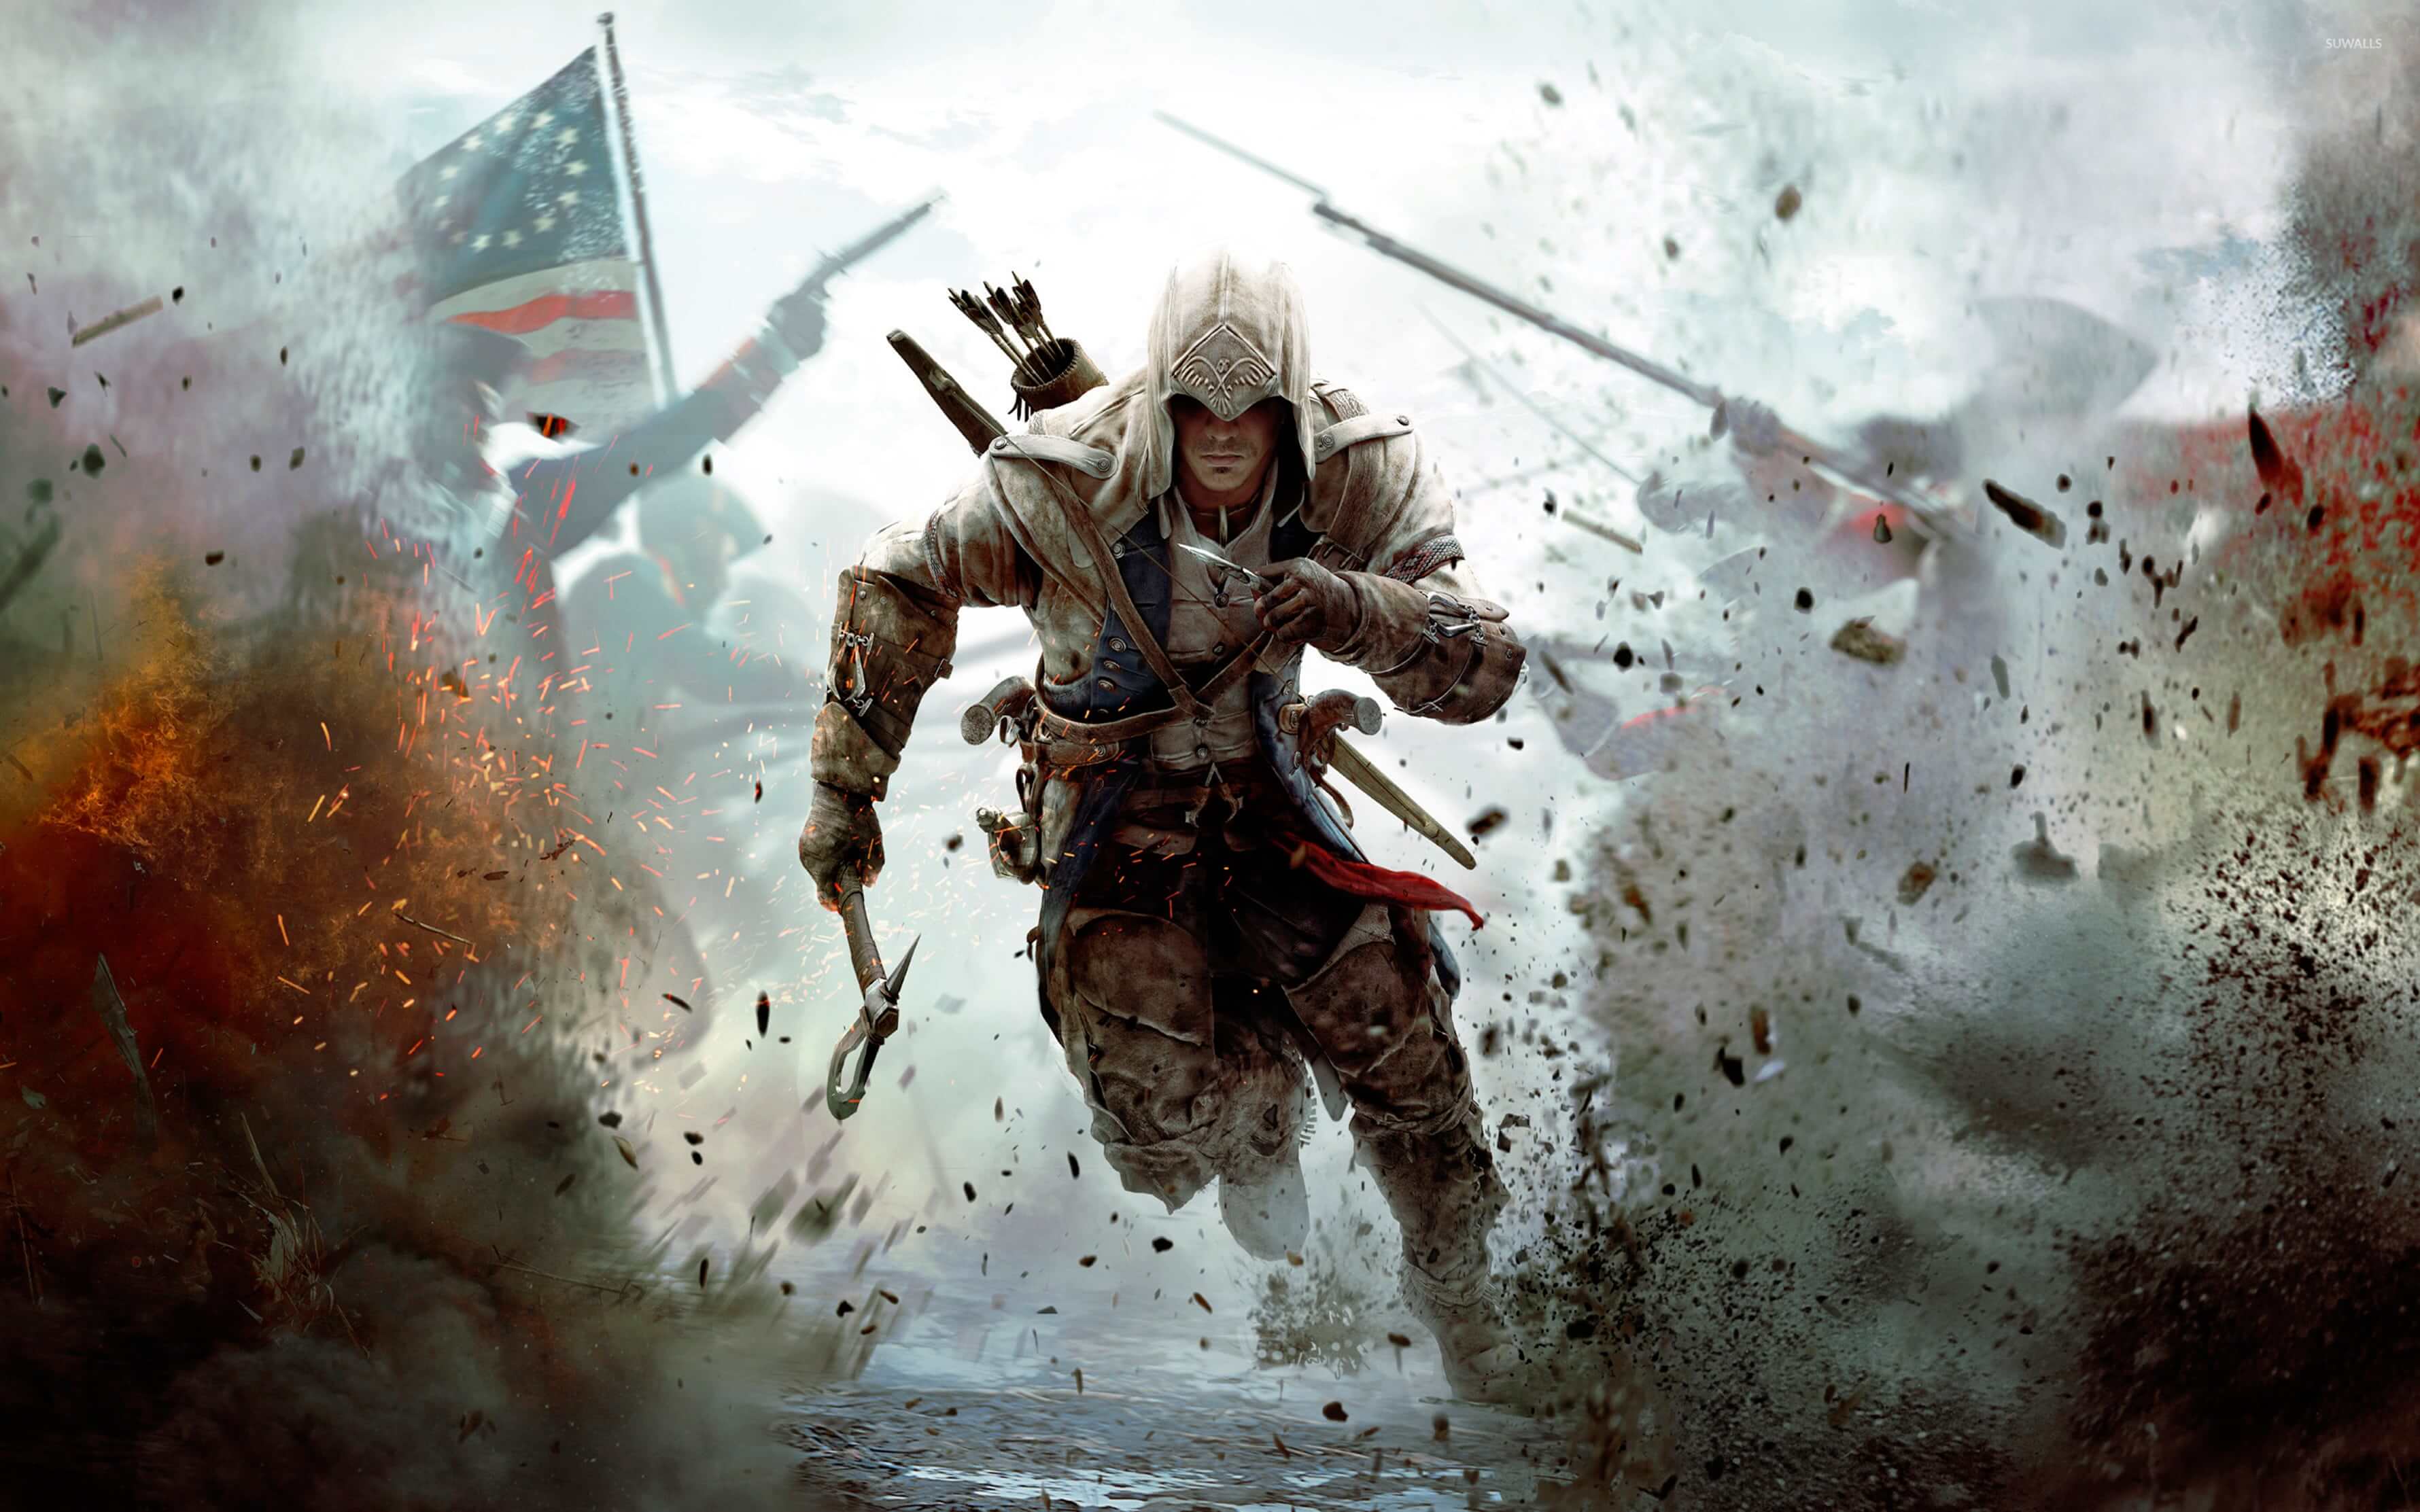 Fondos de pantalla de Assassins Creed - FondosMil